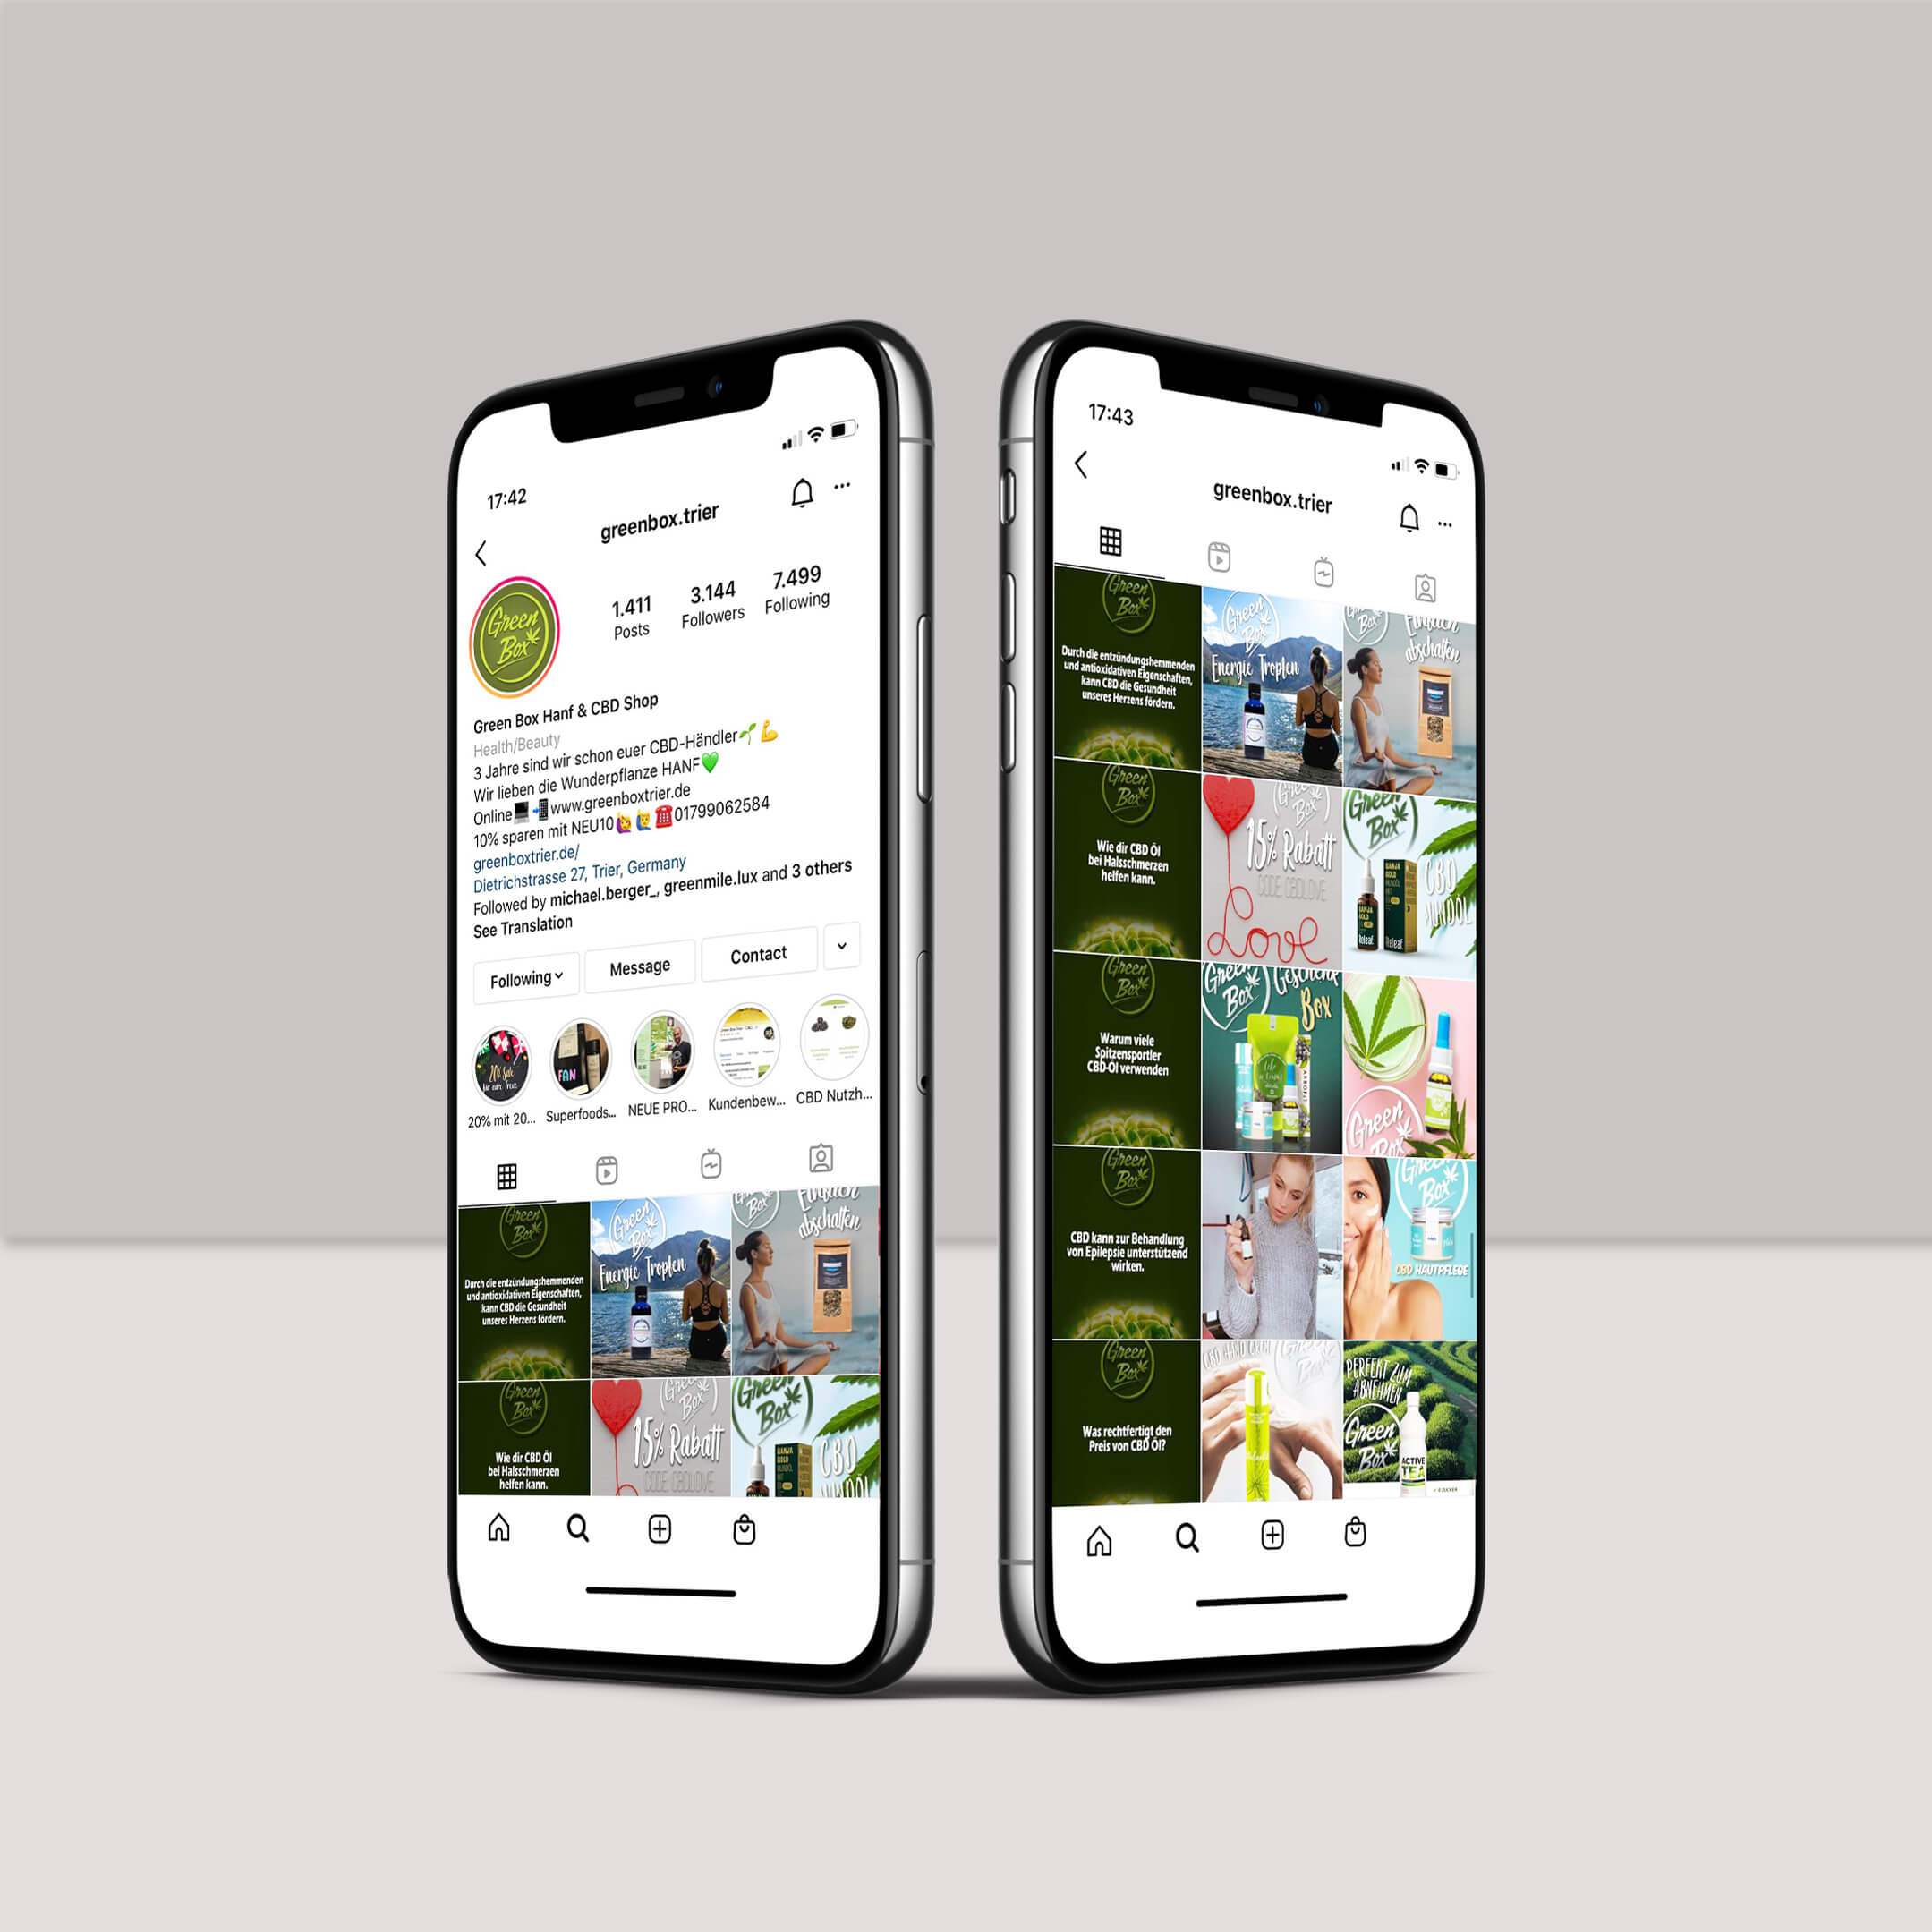 Darstellung und Beschreibung des Social Media Instagram Auftritts von der Green Box Trier auf dem Smartphone